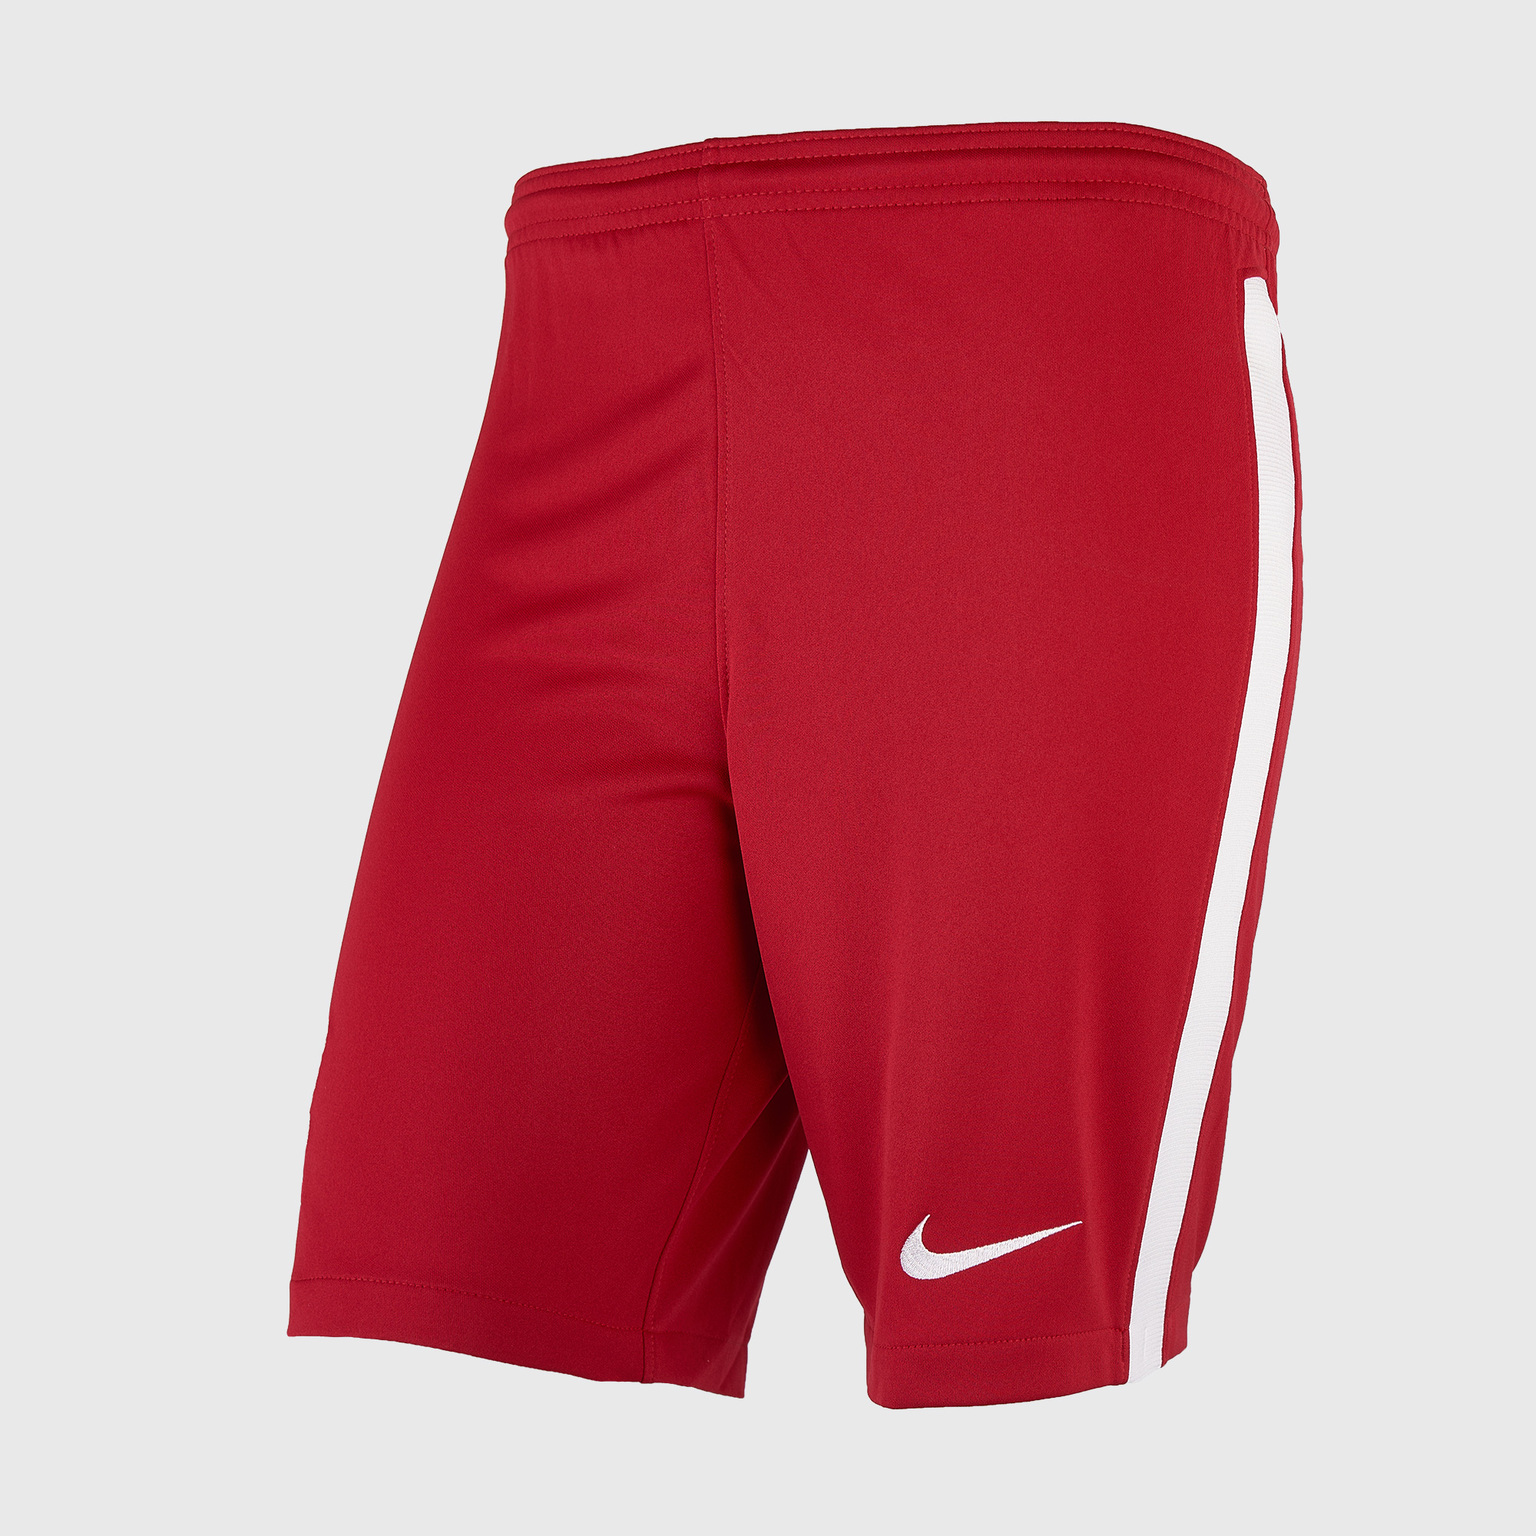 Шорты домашние подростковые Nike Liverpool сезон 2020/21